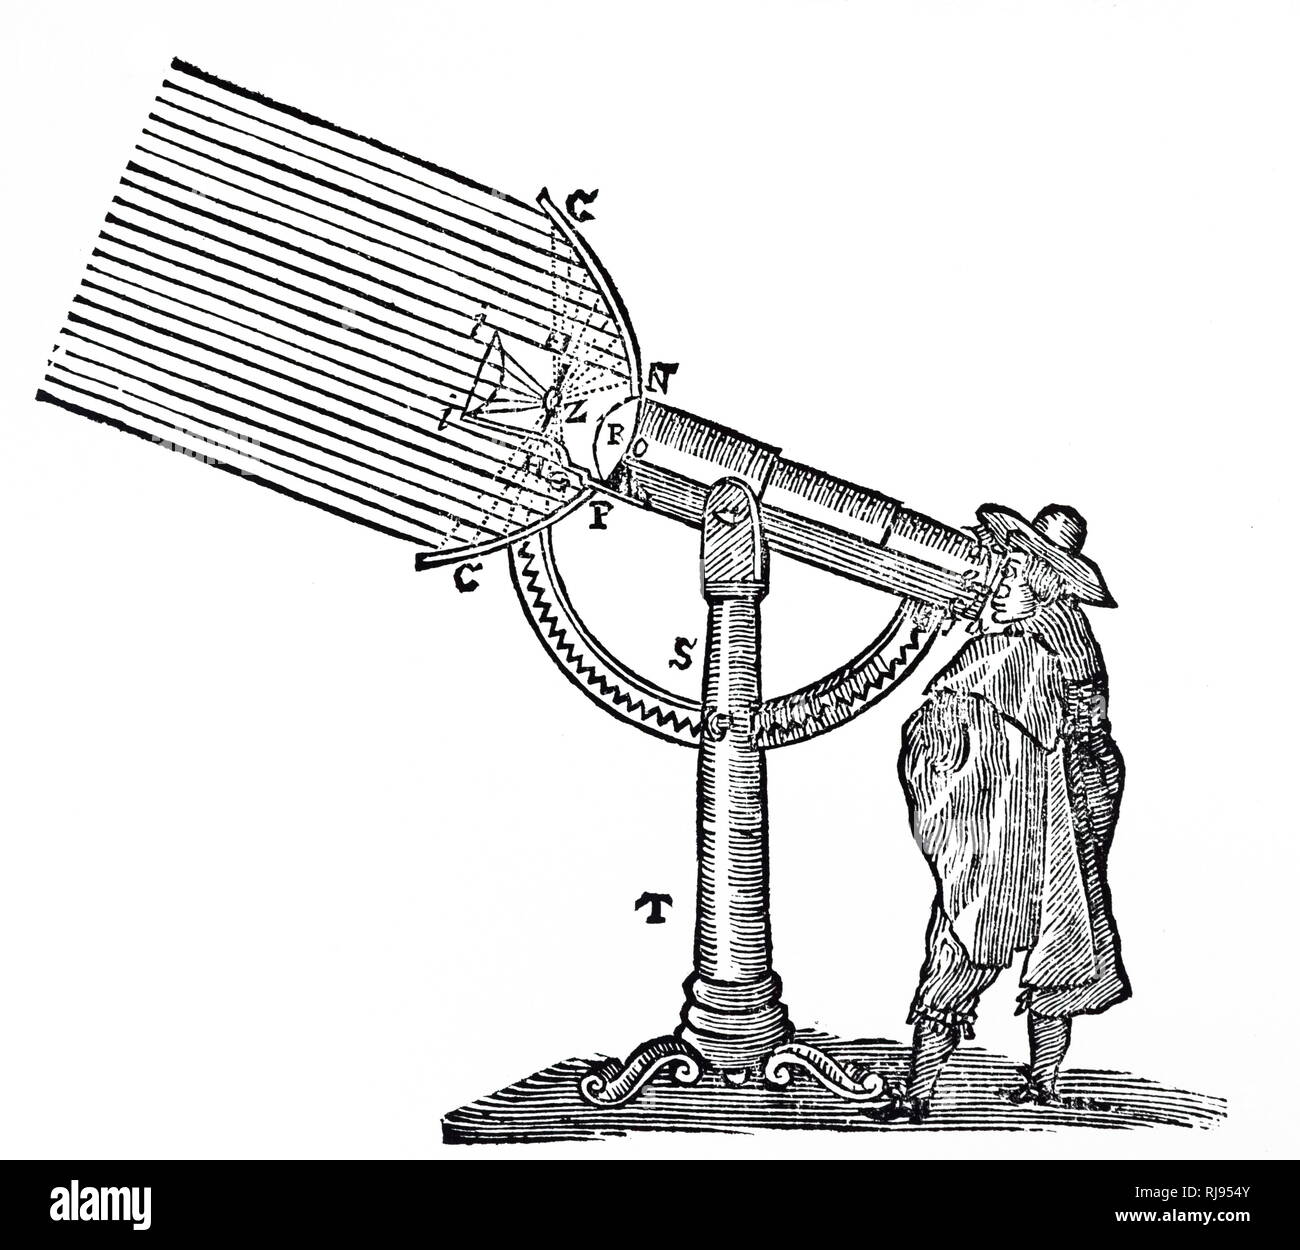 Eine Gravur, Rene Descartes' zusammengesetzte Mikroskop mit Spiegel für reflektierte Licht und Kondensator für Durchlicht. Rene Descartes (1596-1650), französischer Philosoph, Mathematiker und Naturwissenschaftler. Vom 17. Jahrhundert Stockfoto